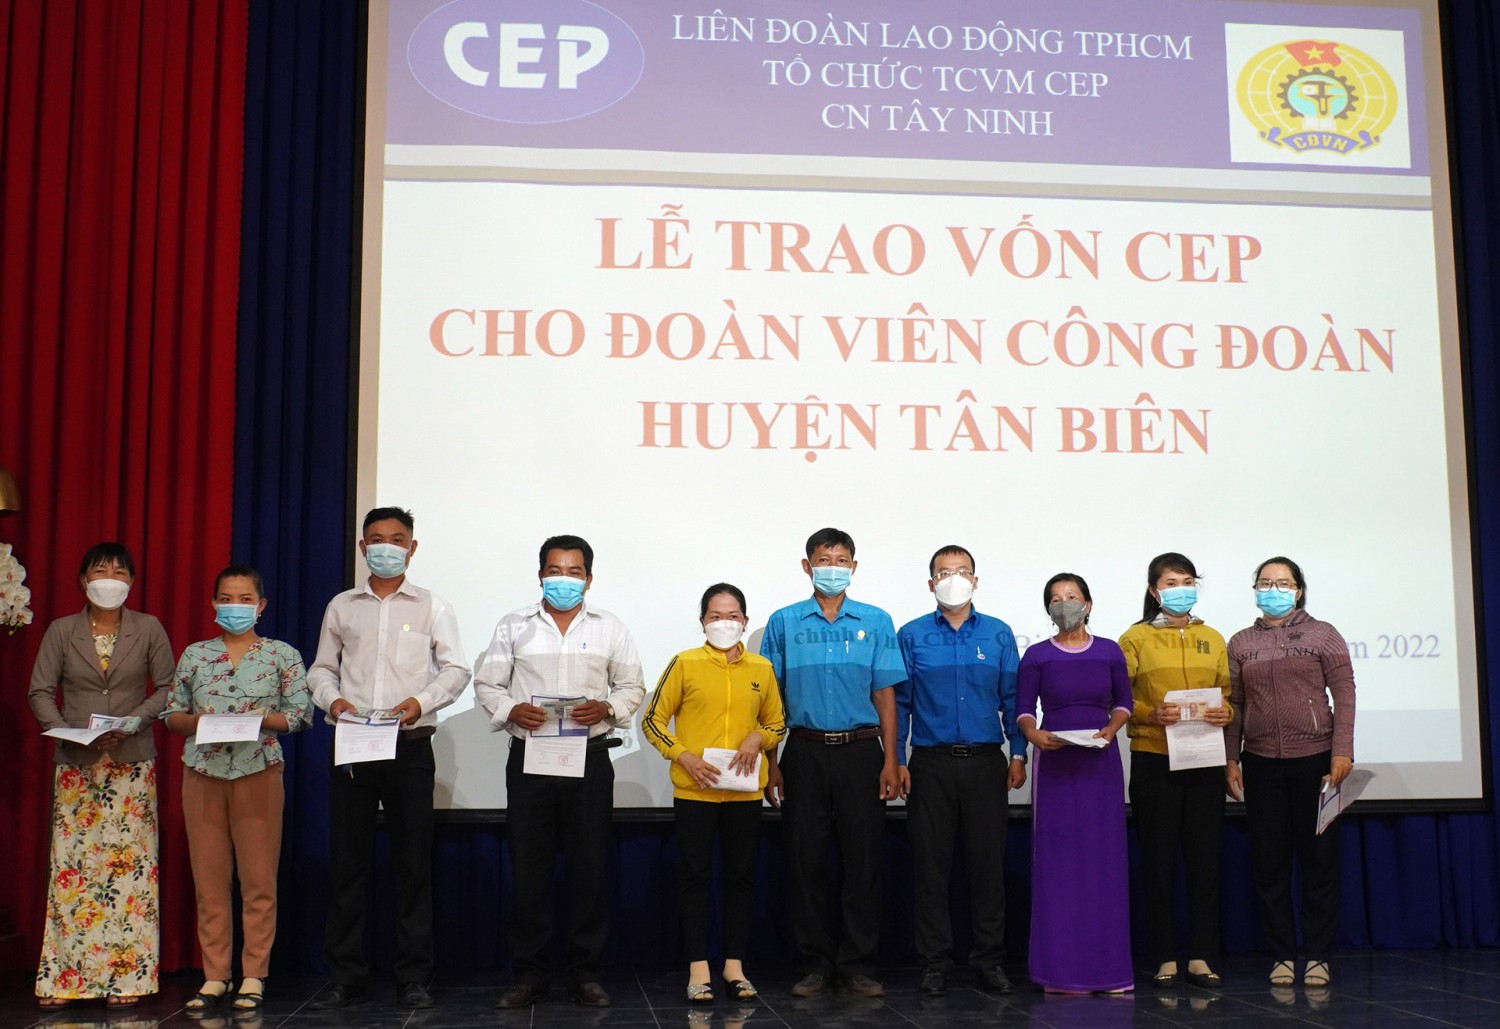 Tân Biên phối hợp triển khai trợ vốn CEP cho đoàn viên, người lao động